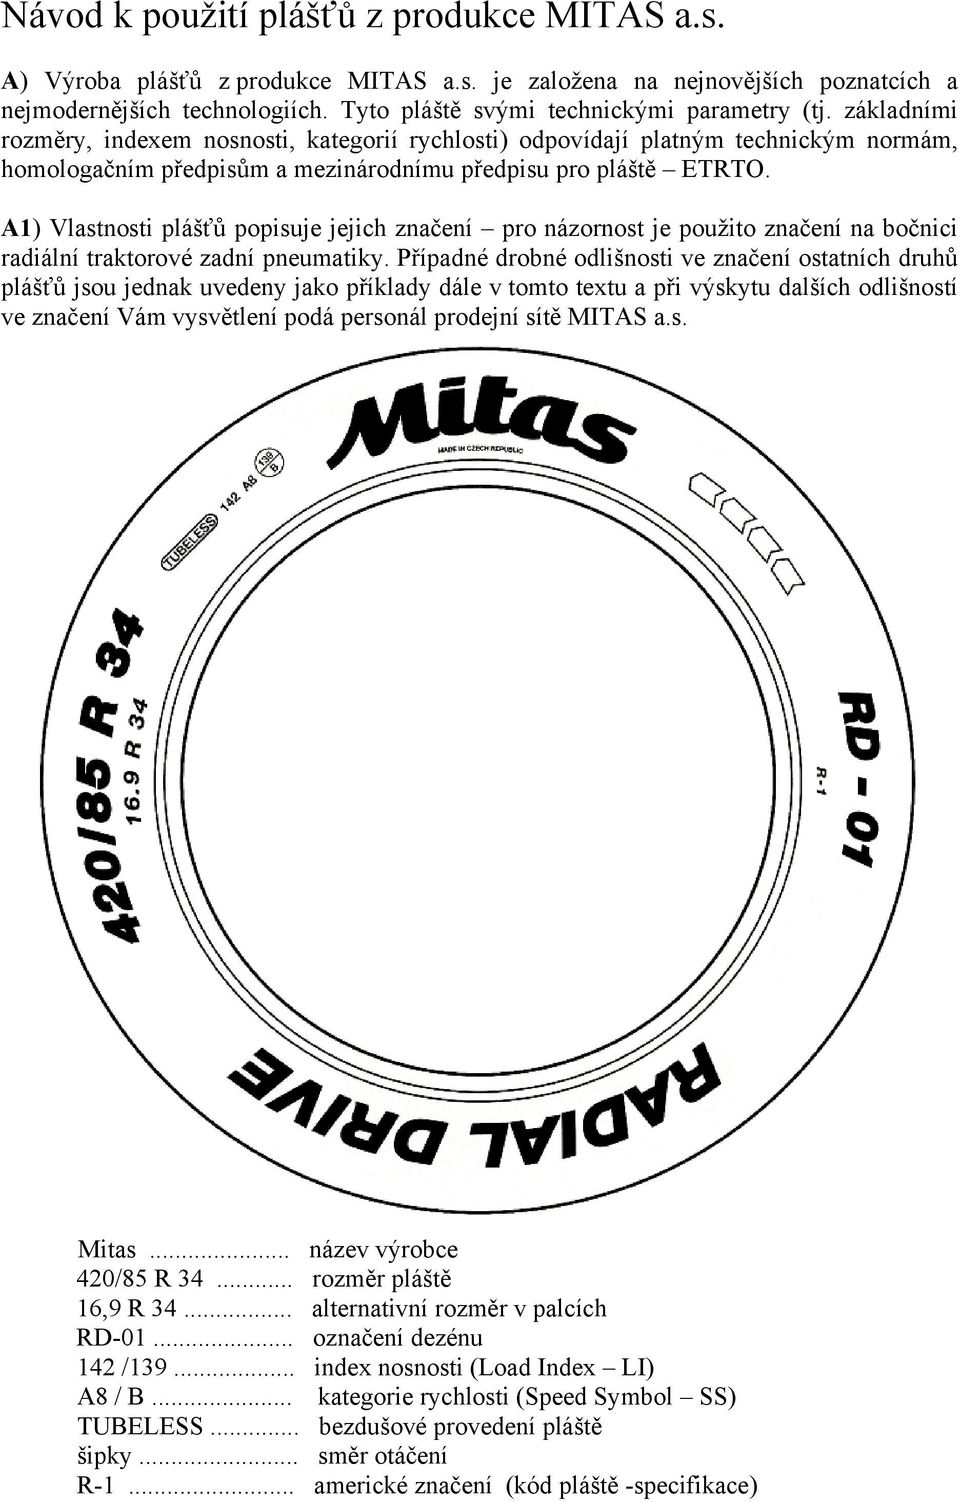 A1) Vlastnosti plášťů popisuje jejich značení pro názornost je použito značení na bočnici radiální traktorové zadní pneumatiky.